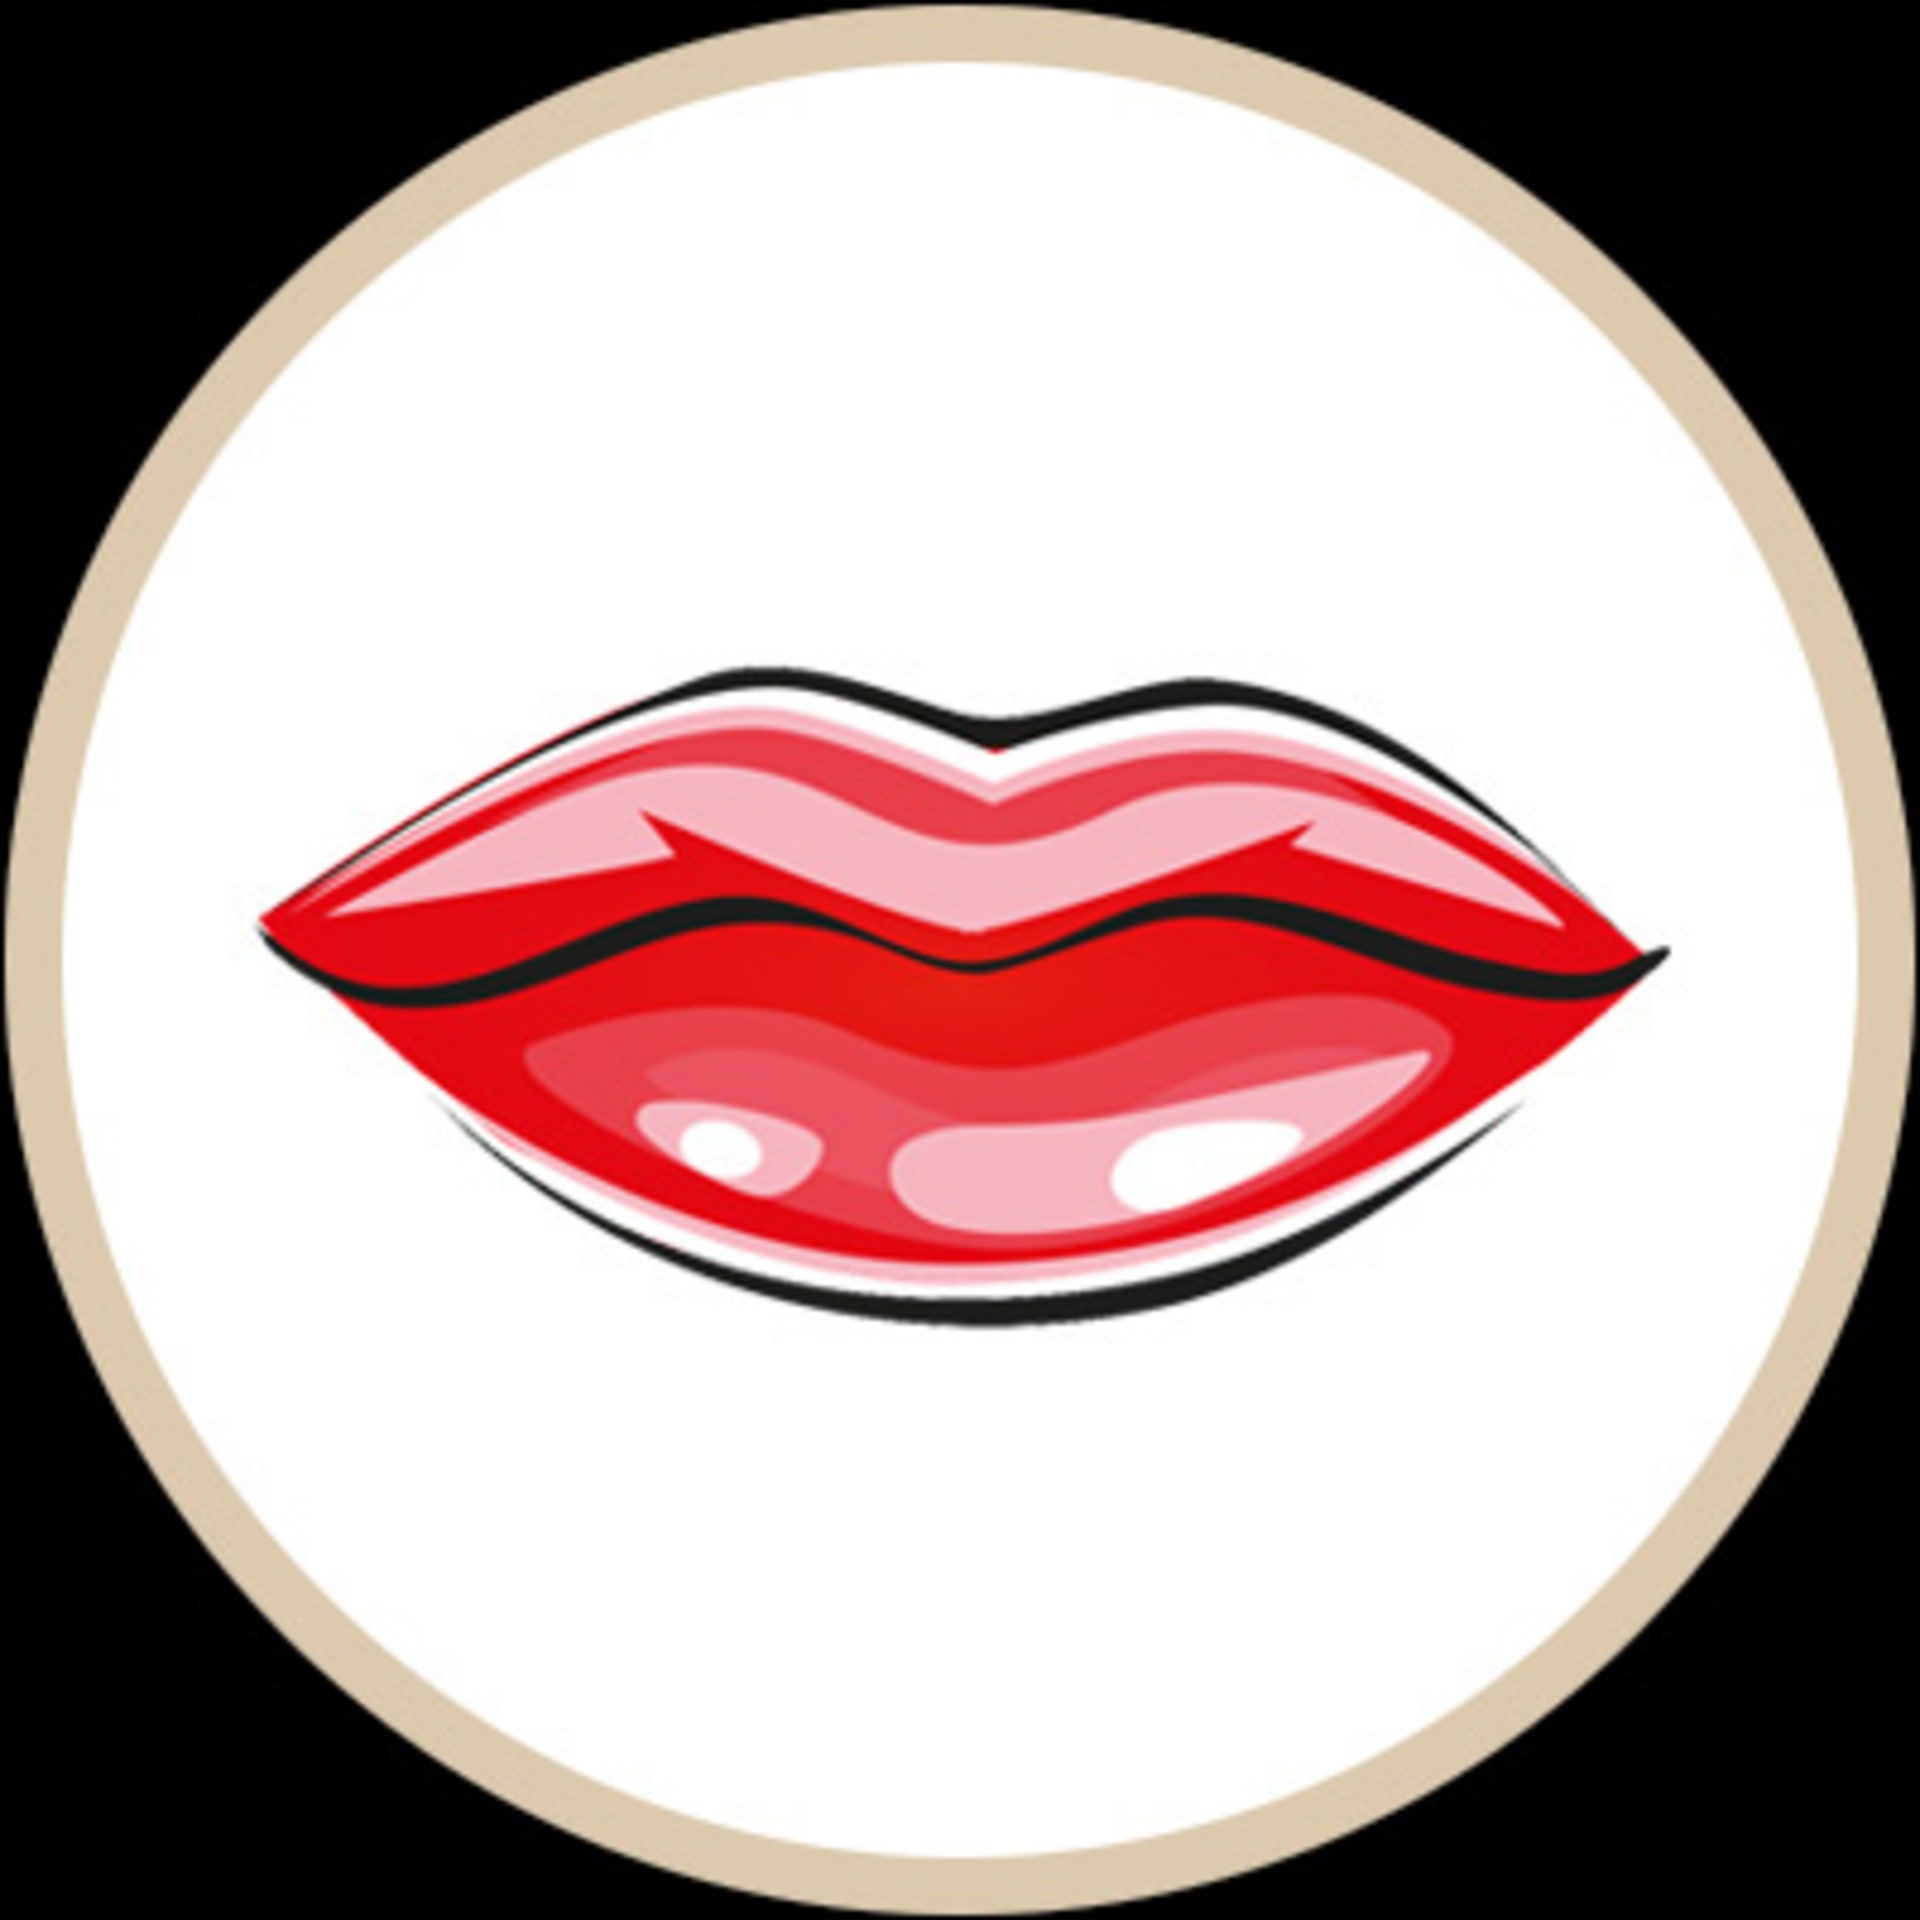 Lipfinity Lip Colour | Max Factor